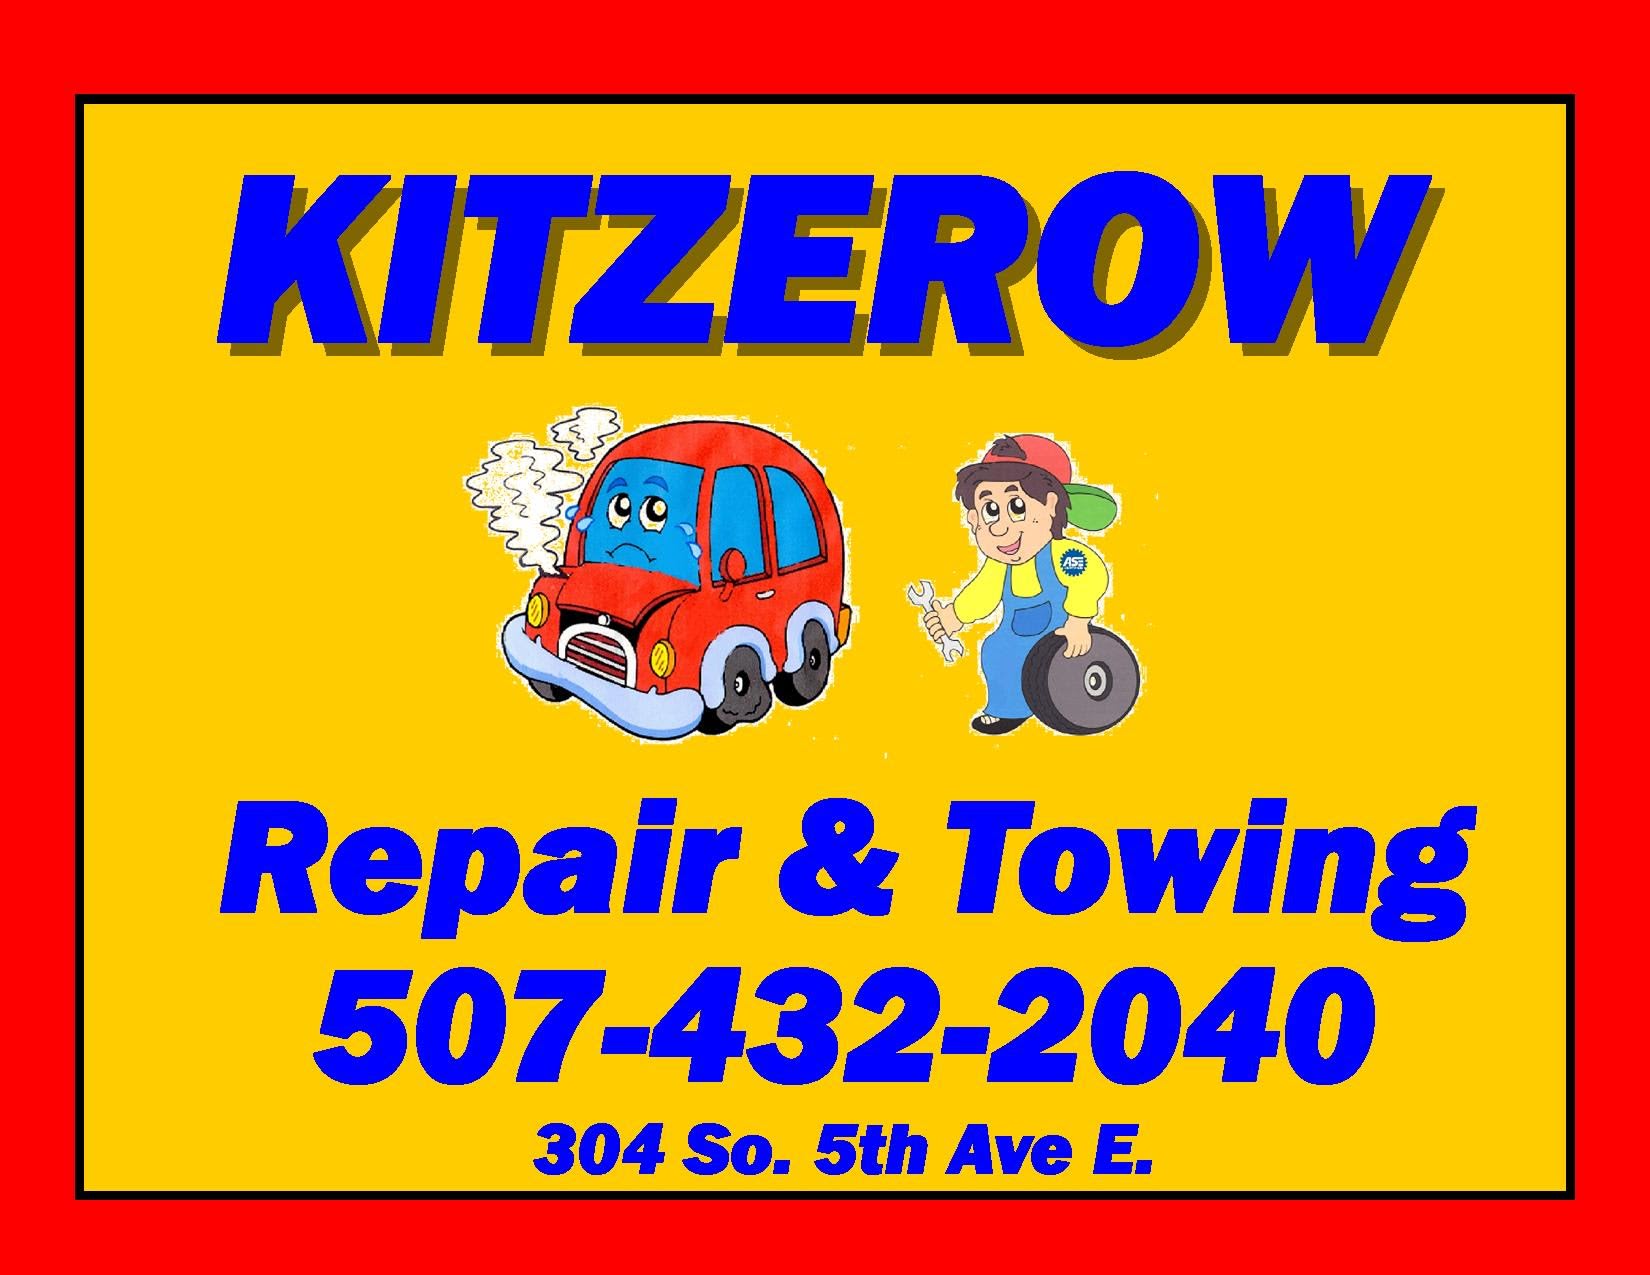 Kitzerow Repair & Towing